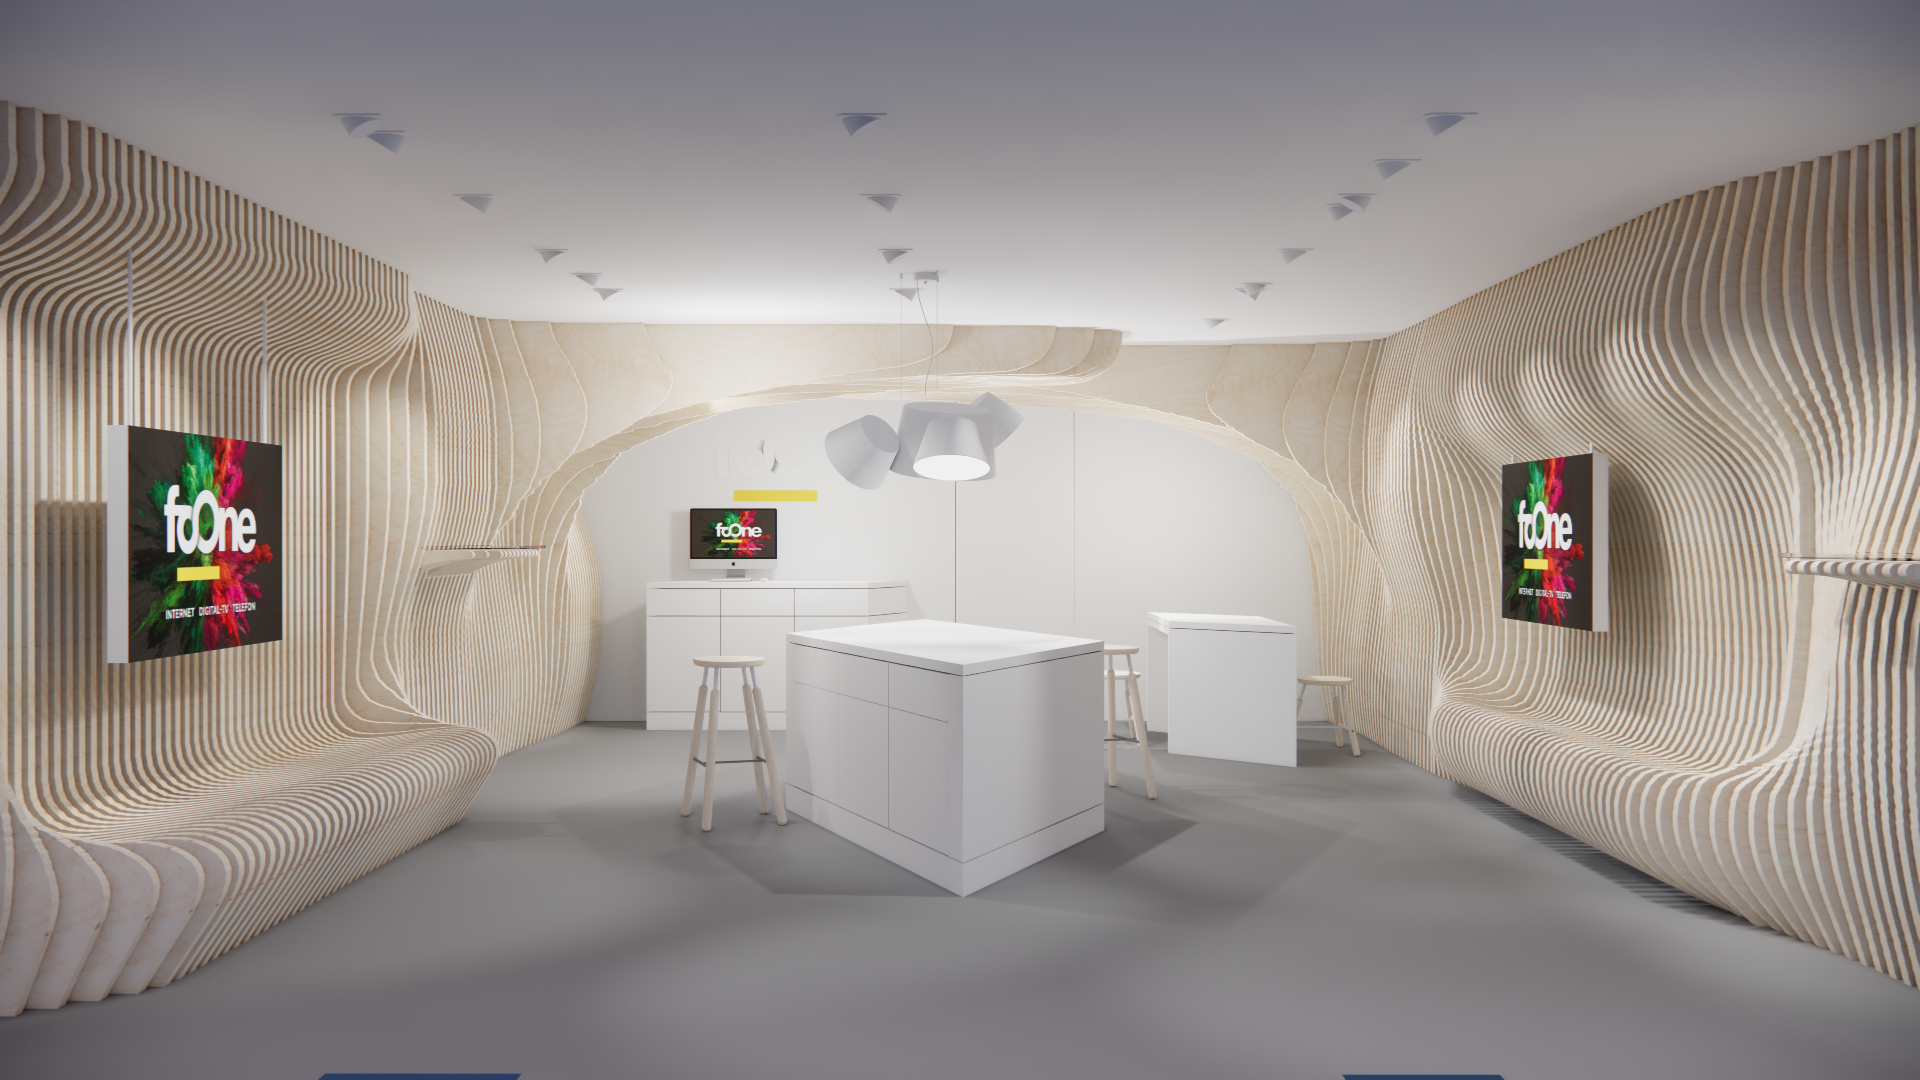 Foone Retail Design Communication Store Design mit Holzlatten-Installation